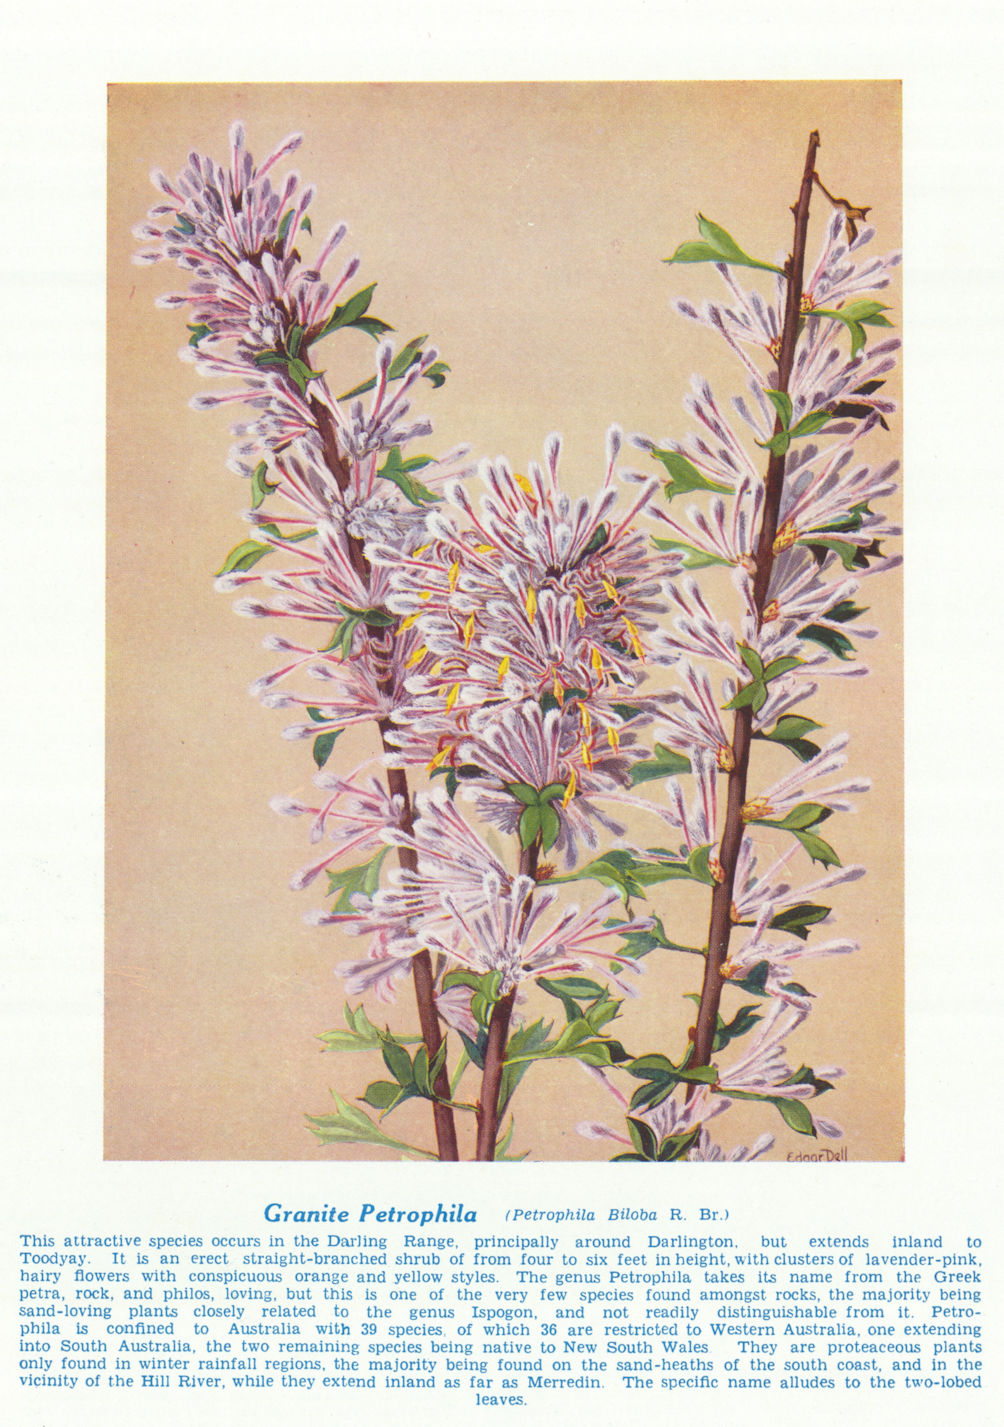 Associate Product Granite Petrophila (Petrophila biloba). West Australian Wild Flowers 1950